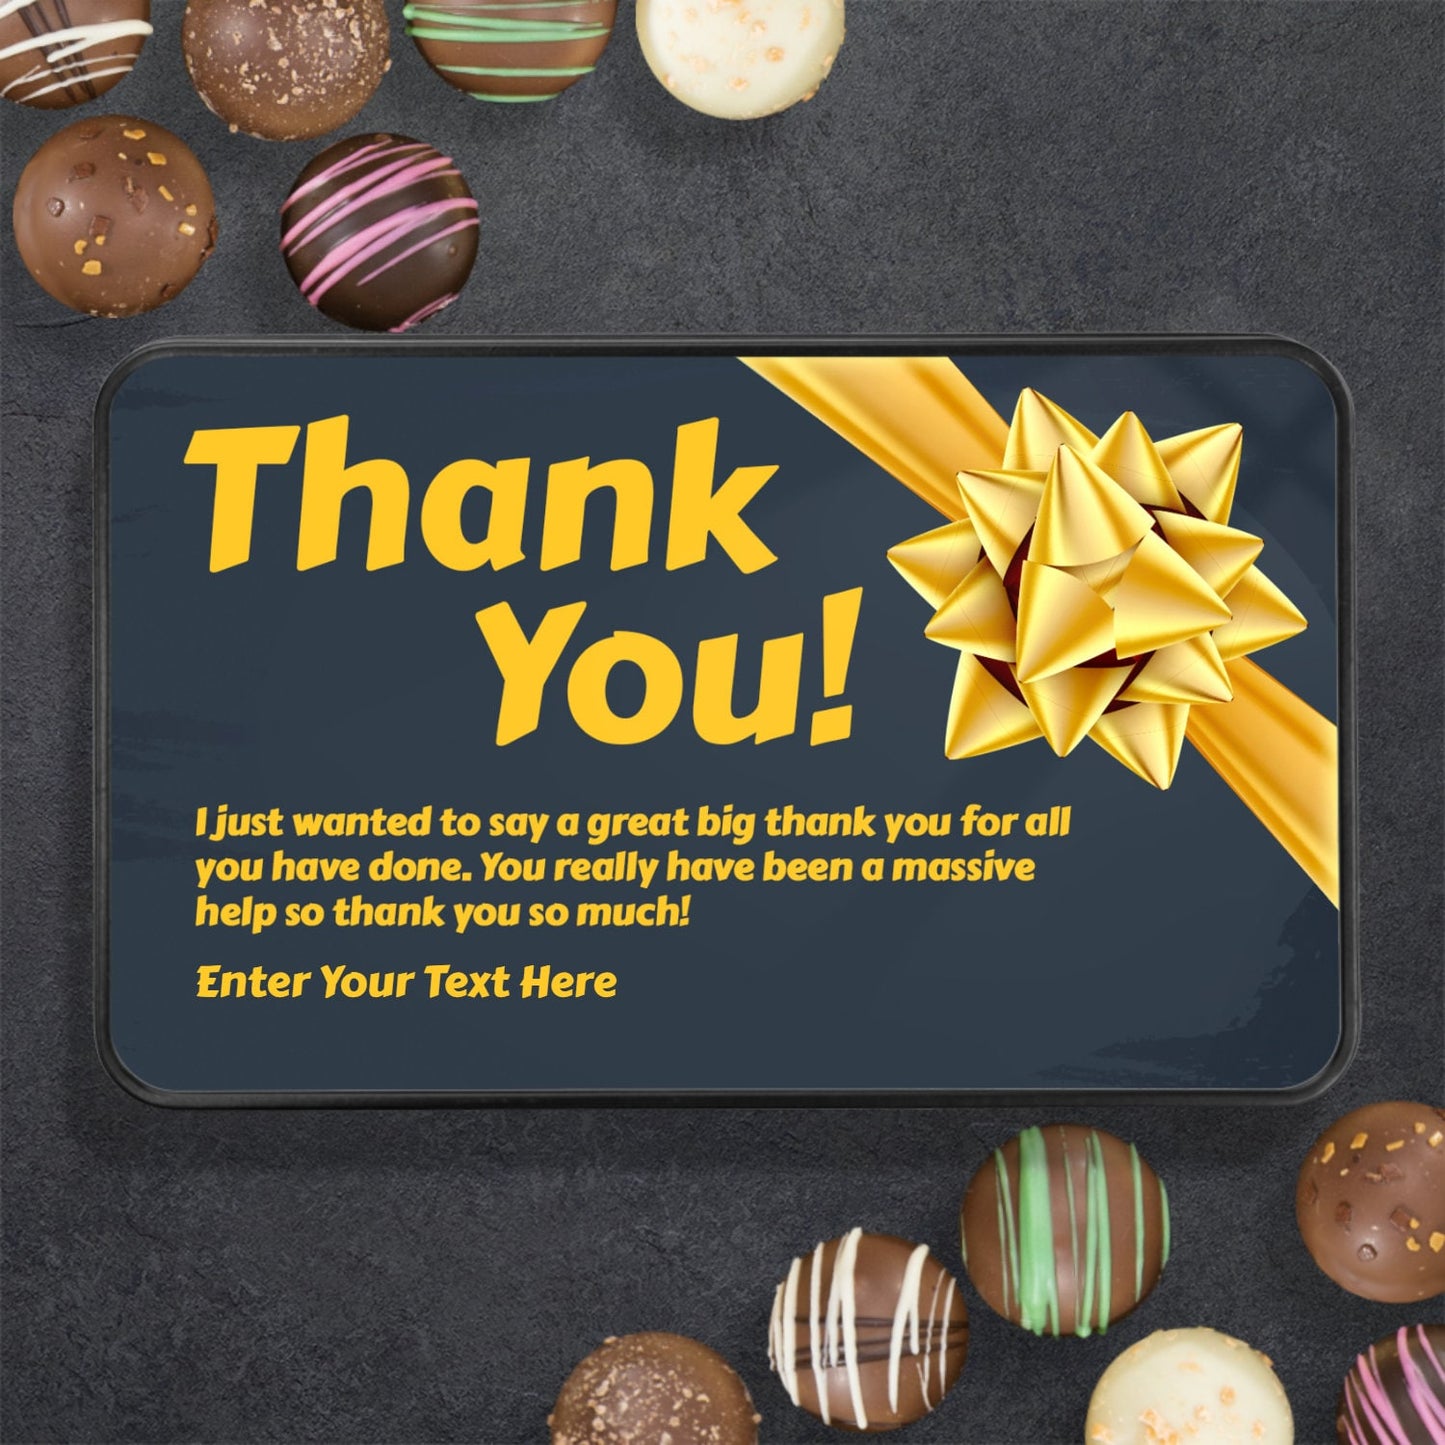 Thank You Gift, Chocolate Gift,Chocolate Thank You Gift,Chocolate Truffles,Thank You Gift Box,Thank You Gift Coworker,Thank You Gift for Men